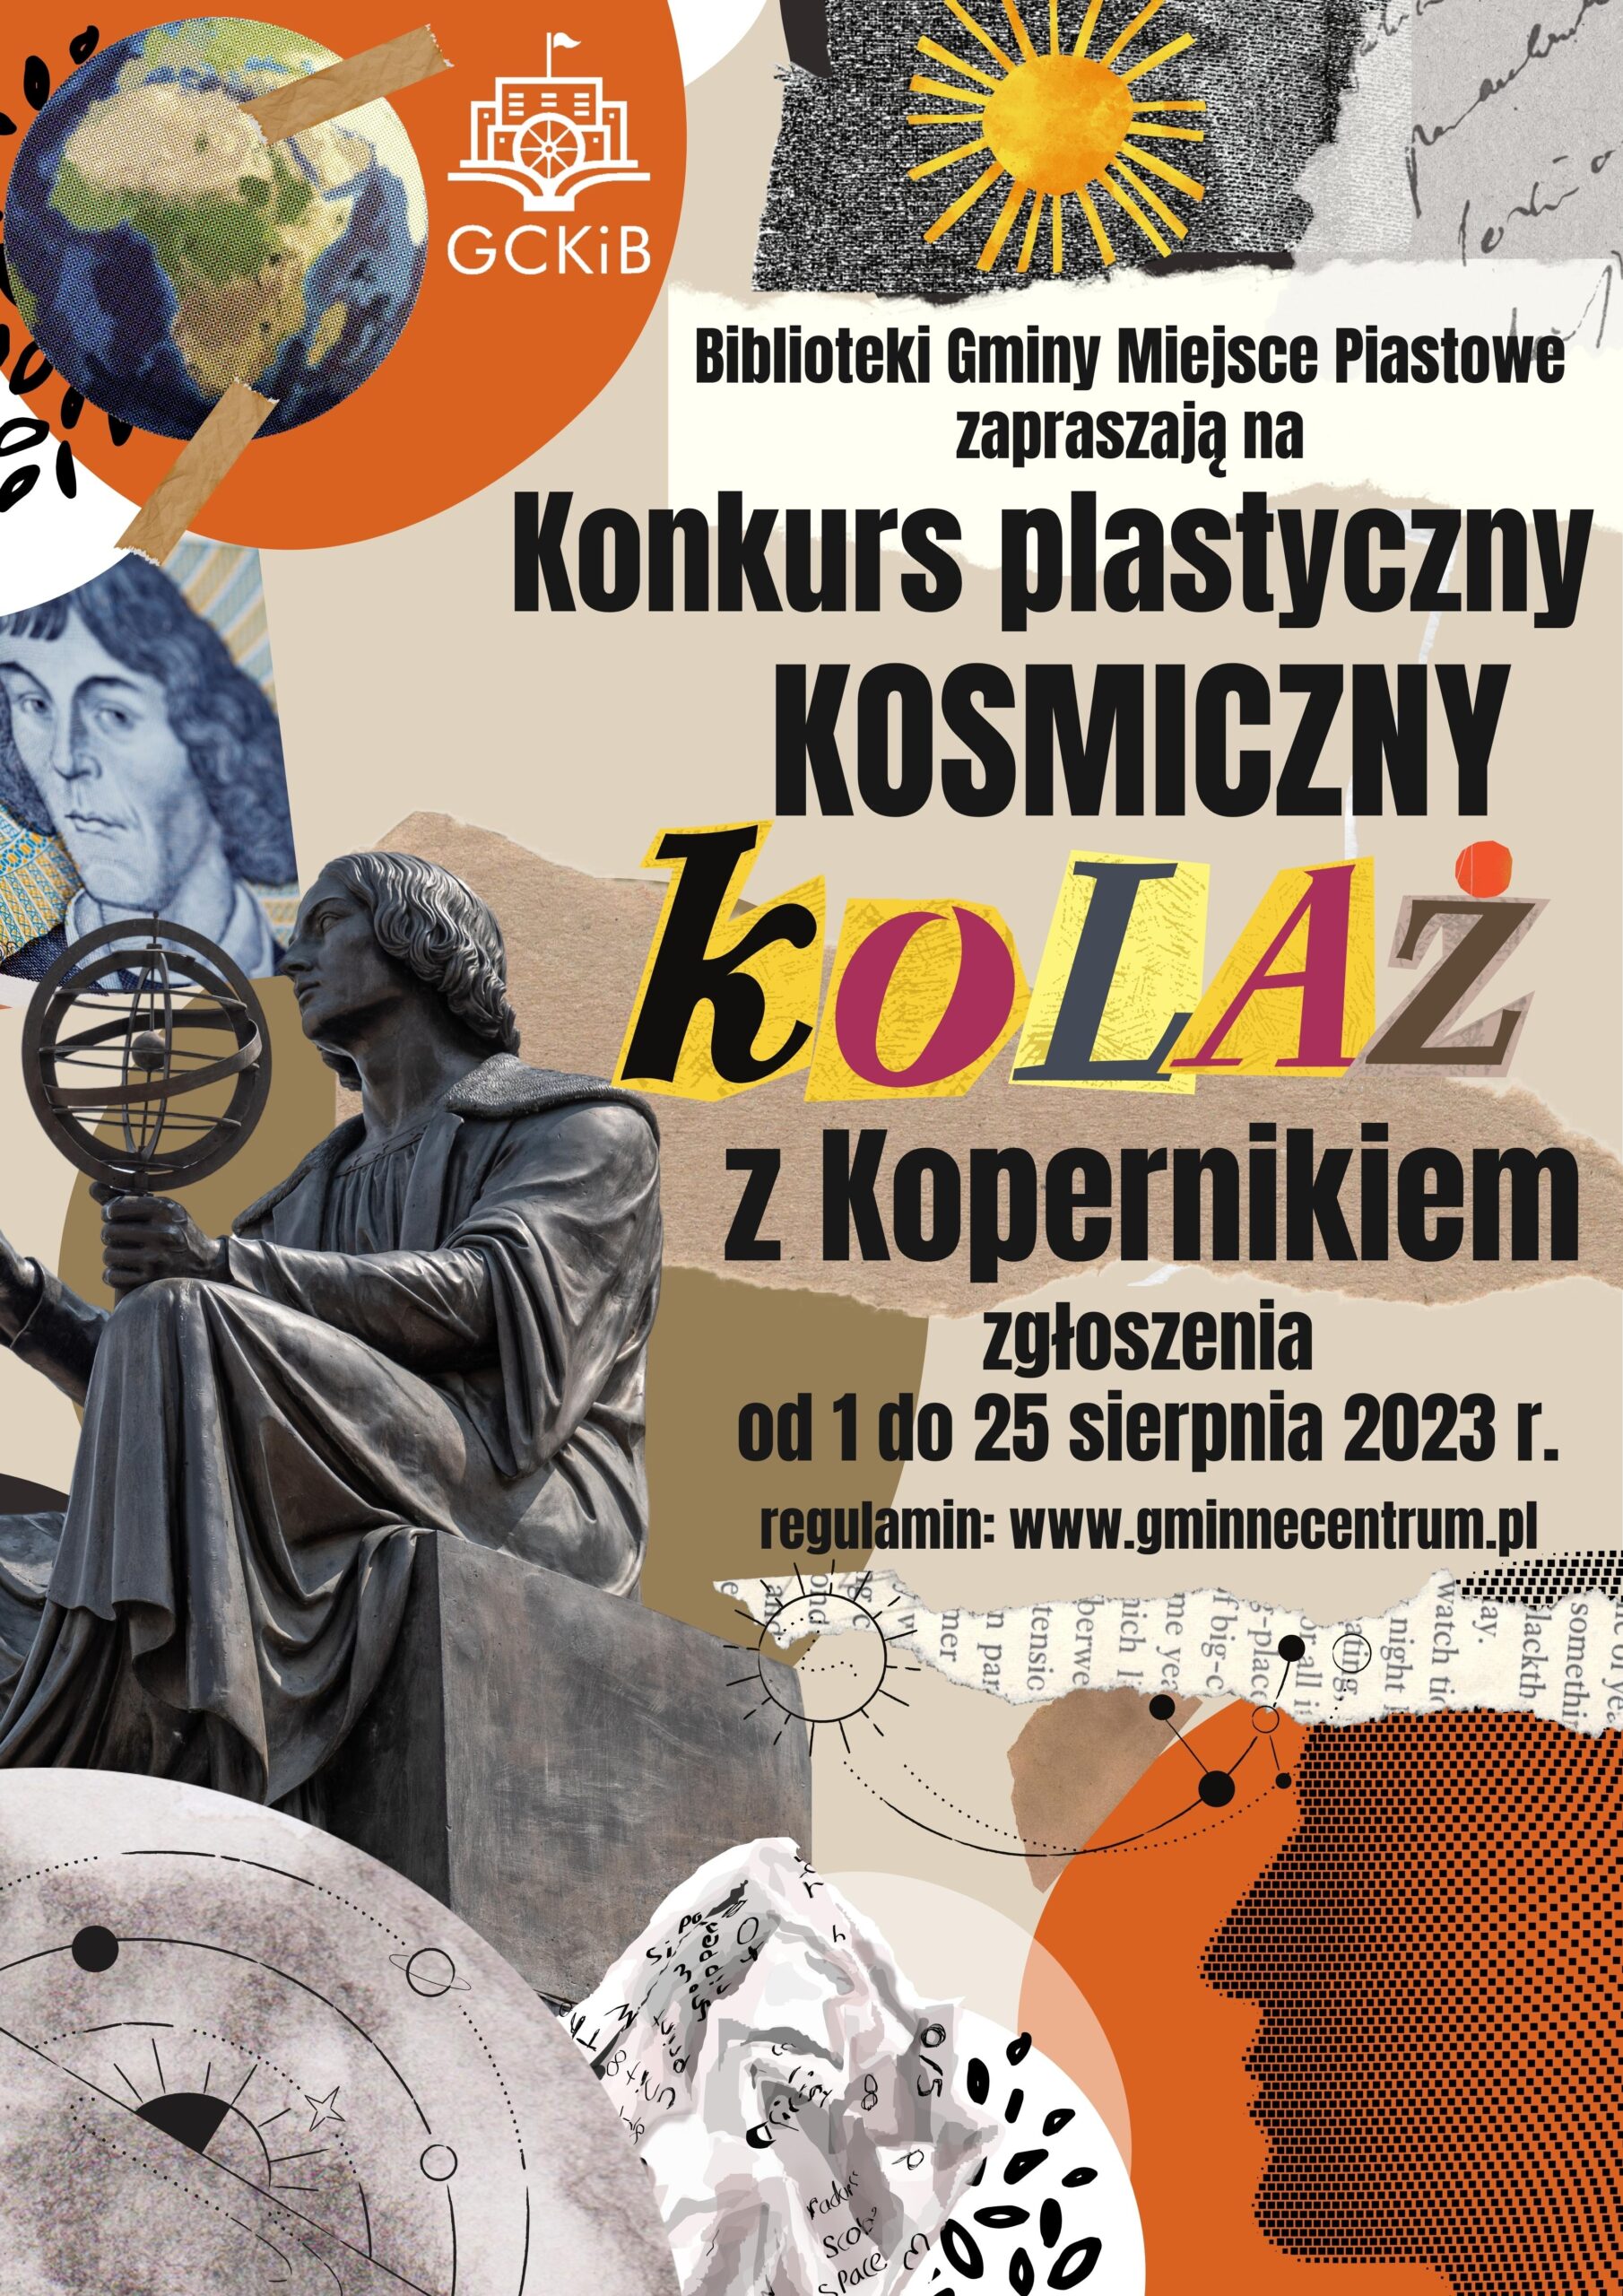 You are currently viewing Kosmiczny kolaż z Kopernikiem